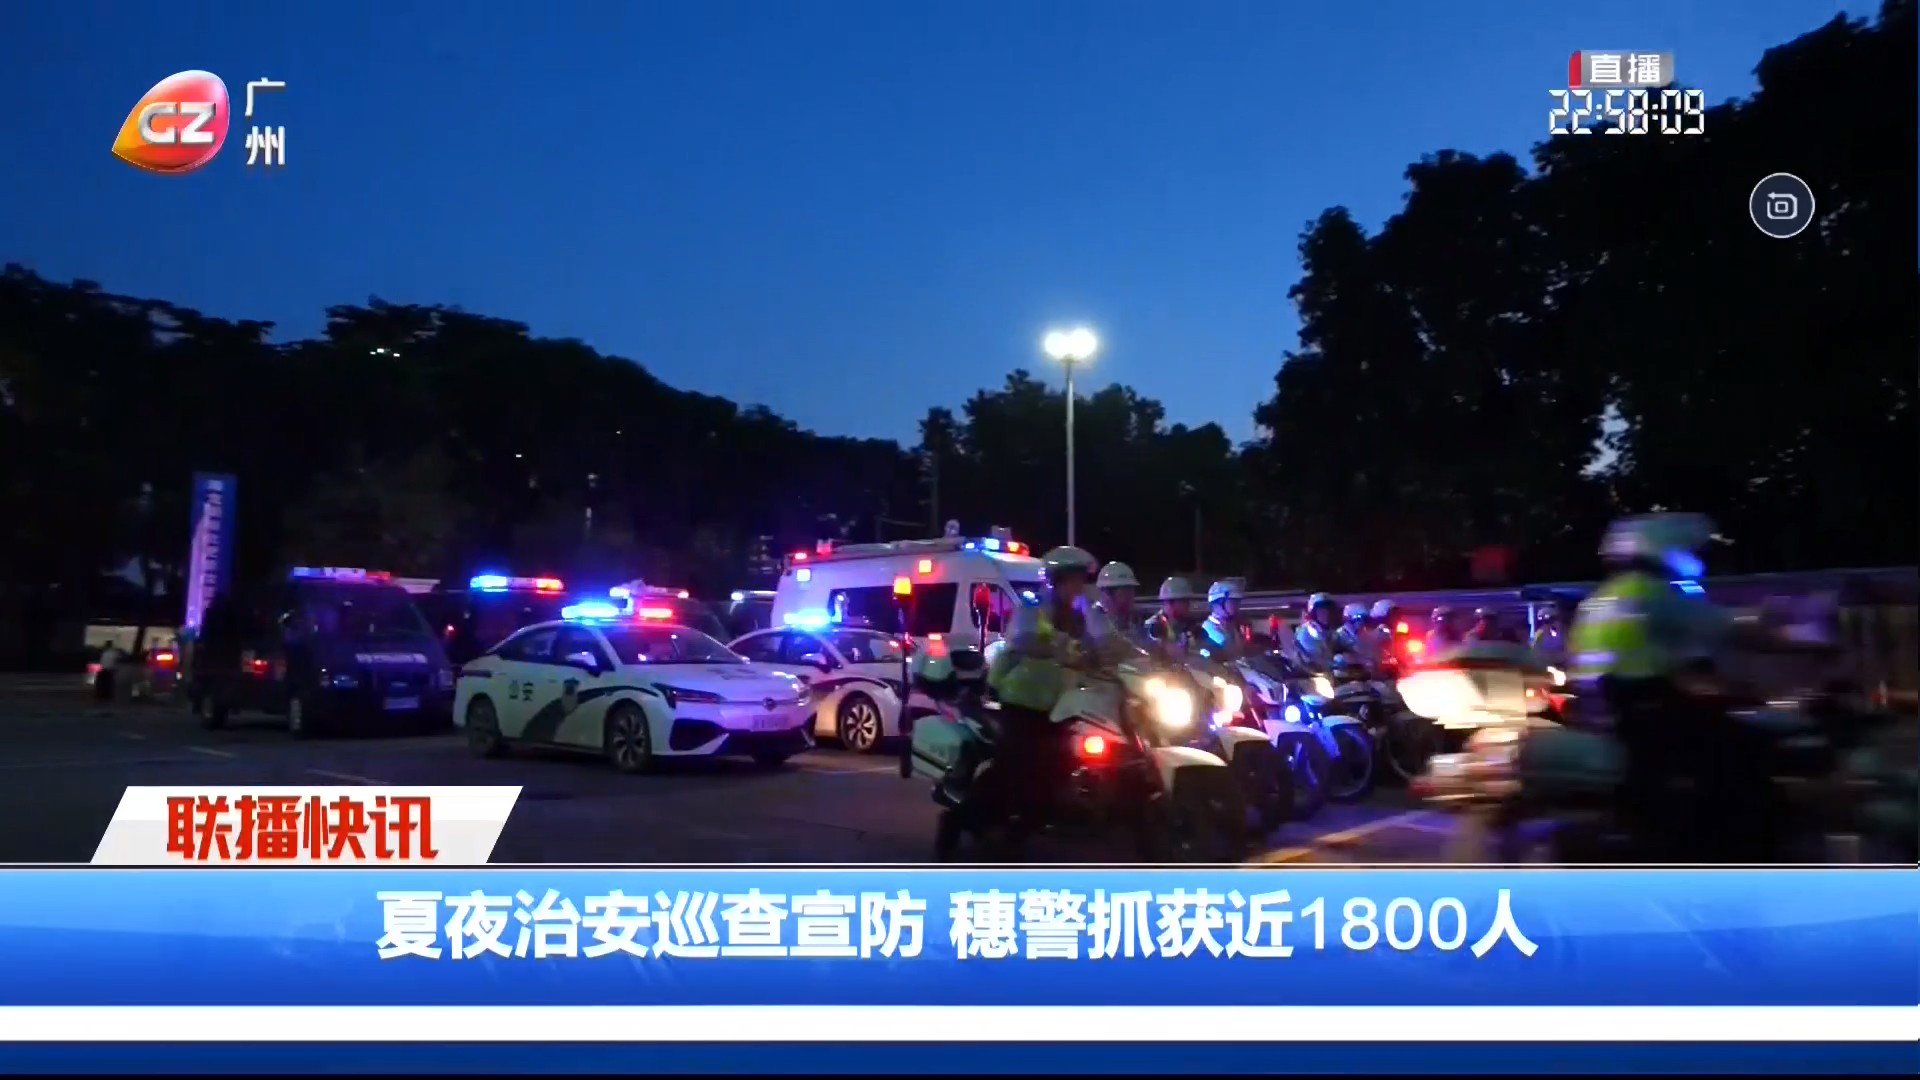 广州台综合频道 广州新闻联播 联播快讯 夏夜治安巡查宣防 穗警抓获近1800人